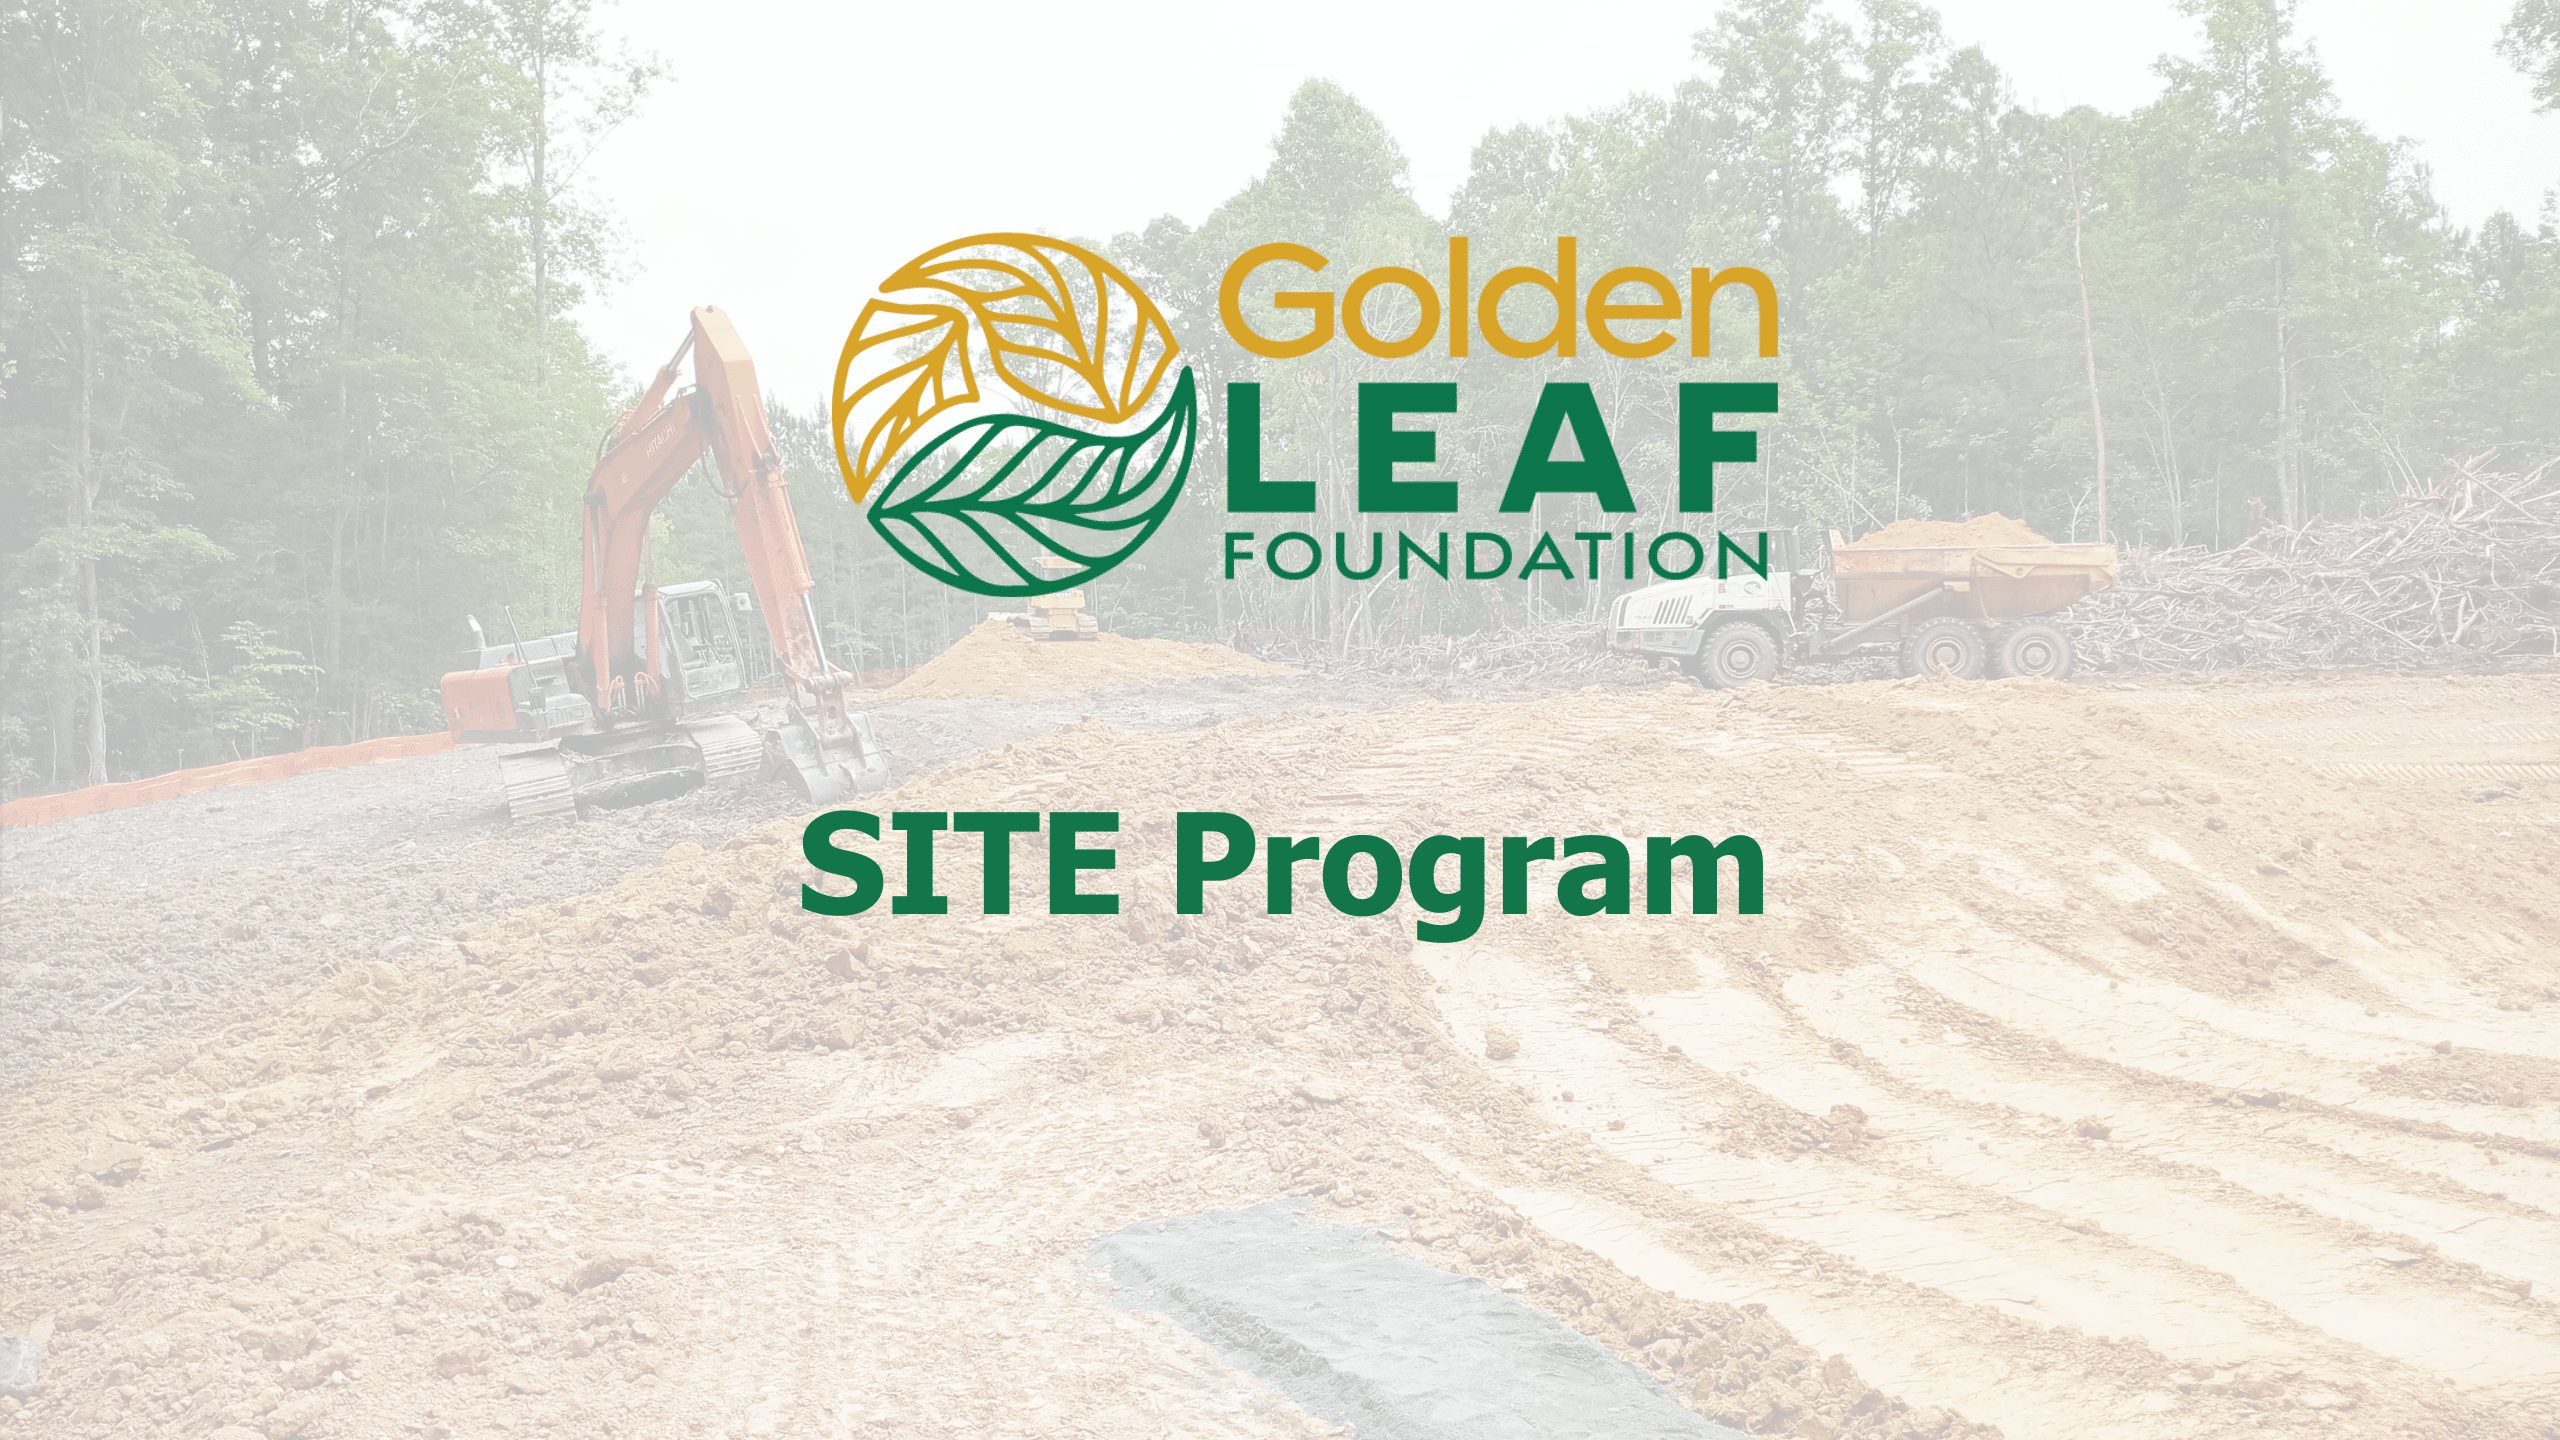 SITE Program funds $24 million in projects since establishing program in 2021